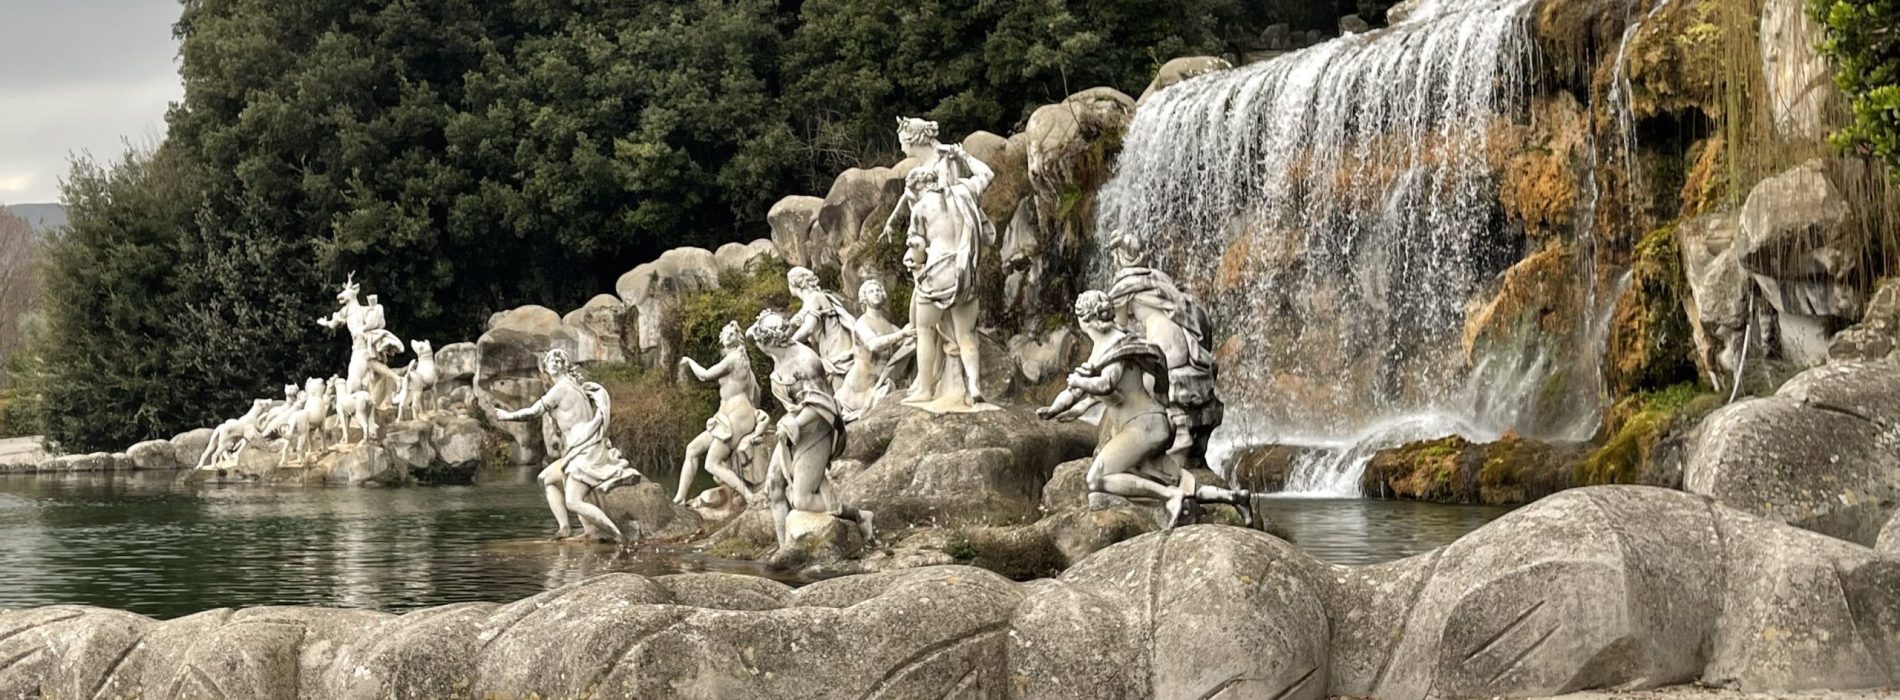 Reggia, al via il restauro per la Fontana di Diana e Atteone